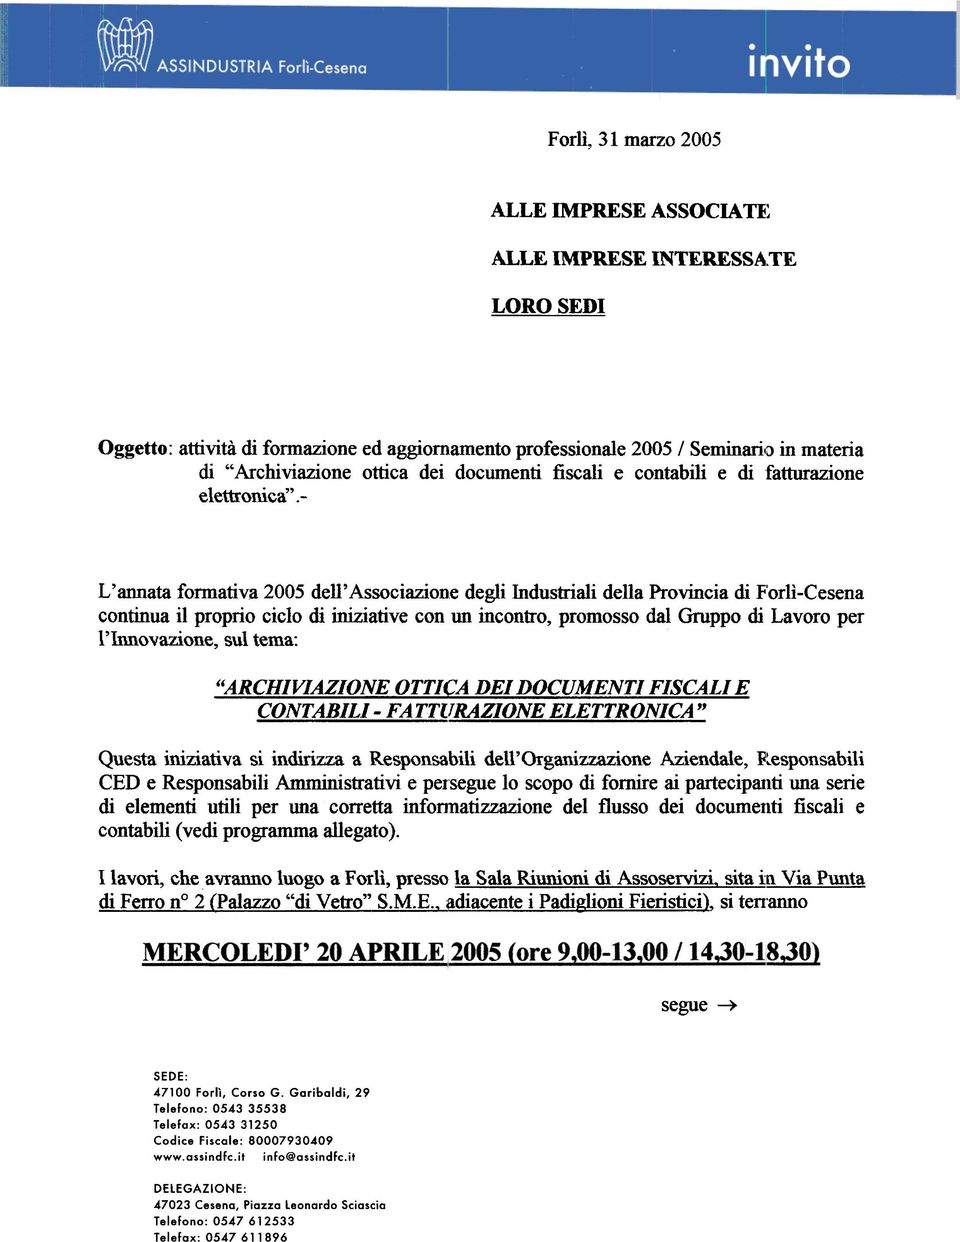 - L'annata fonnativa 2005 dell'associazione degli Industriali della Provincia di F'orlì-Cesena continua il proprio ciclo di iniziative con un incontro, promosso dal Gruppo di Lavoro per